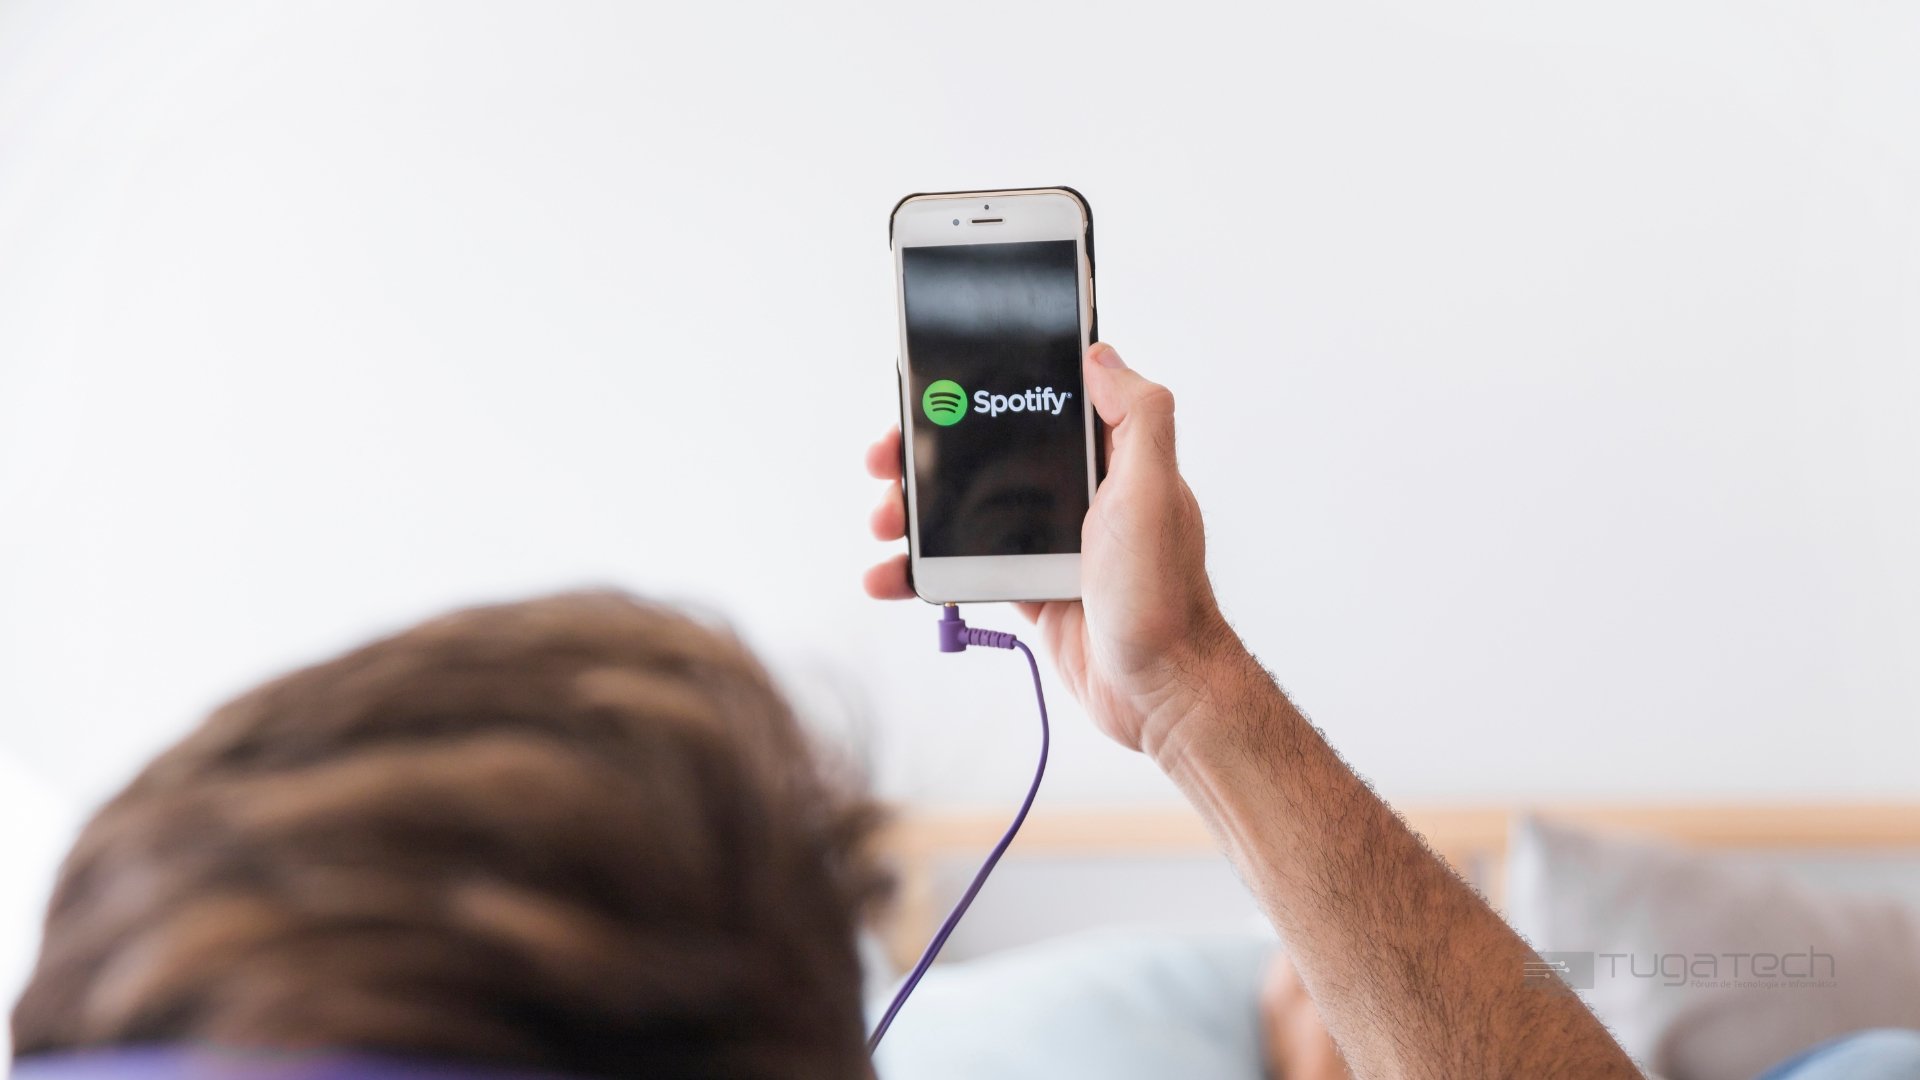 Spotify a ser usado em smartphone